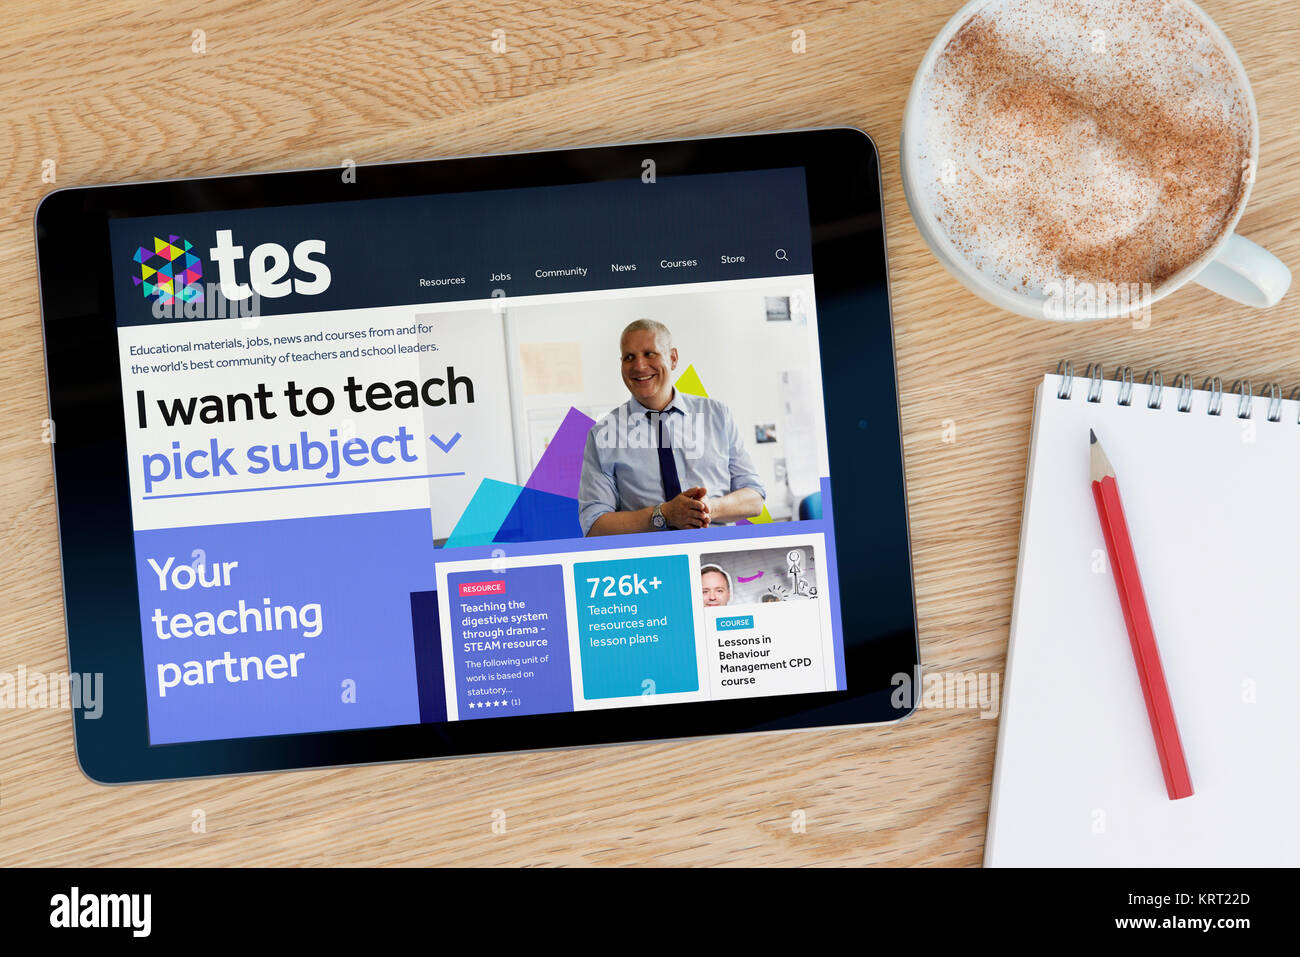 Die TES-Website auf einem iPad Tablet Gerät, das auf einem Tisch liegt neben einem Notizblock und Bleistift und eine Tasse Kaffee (nur redaktionell) Stockfoto